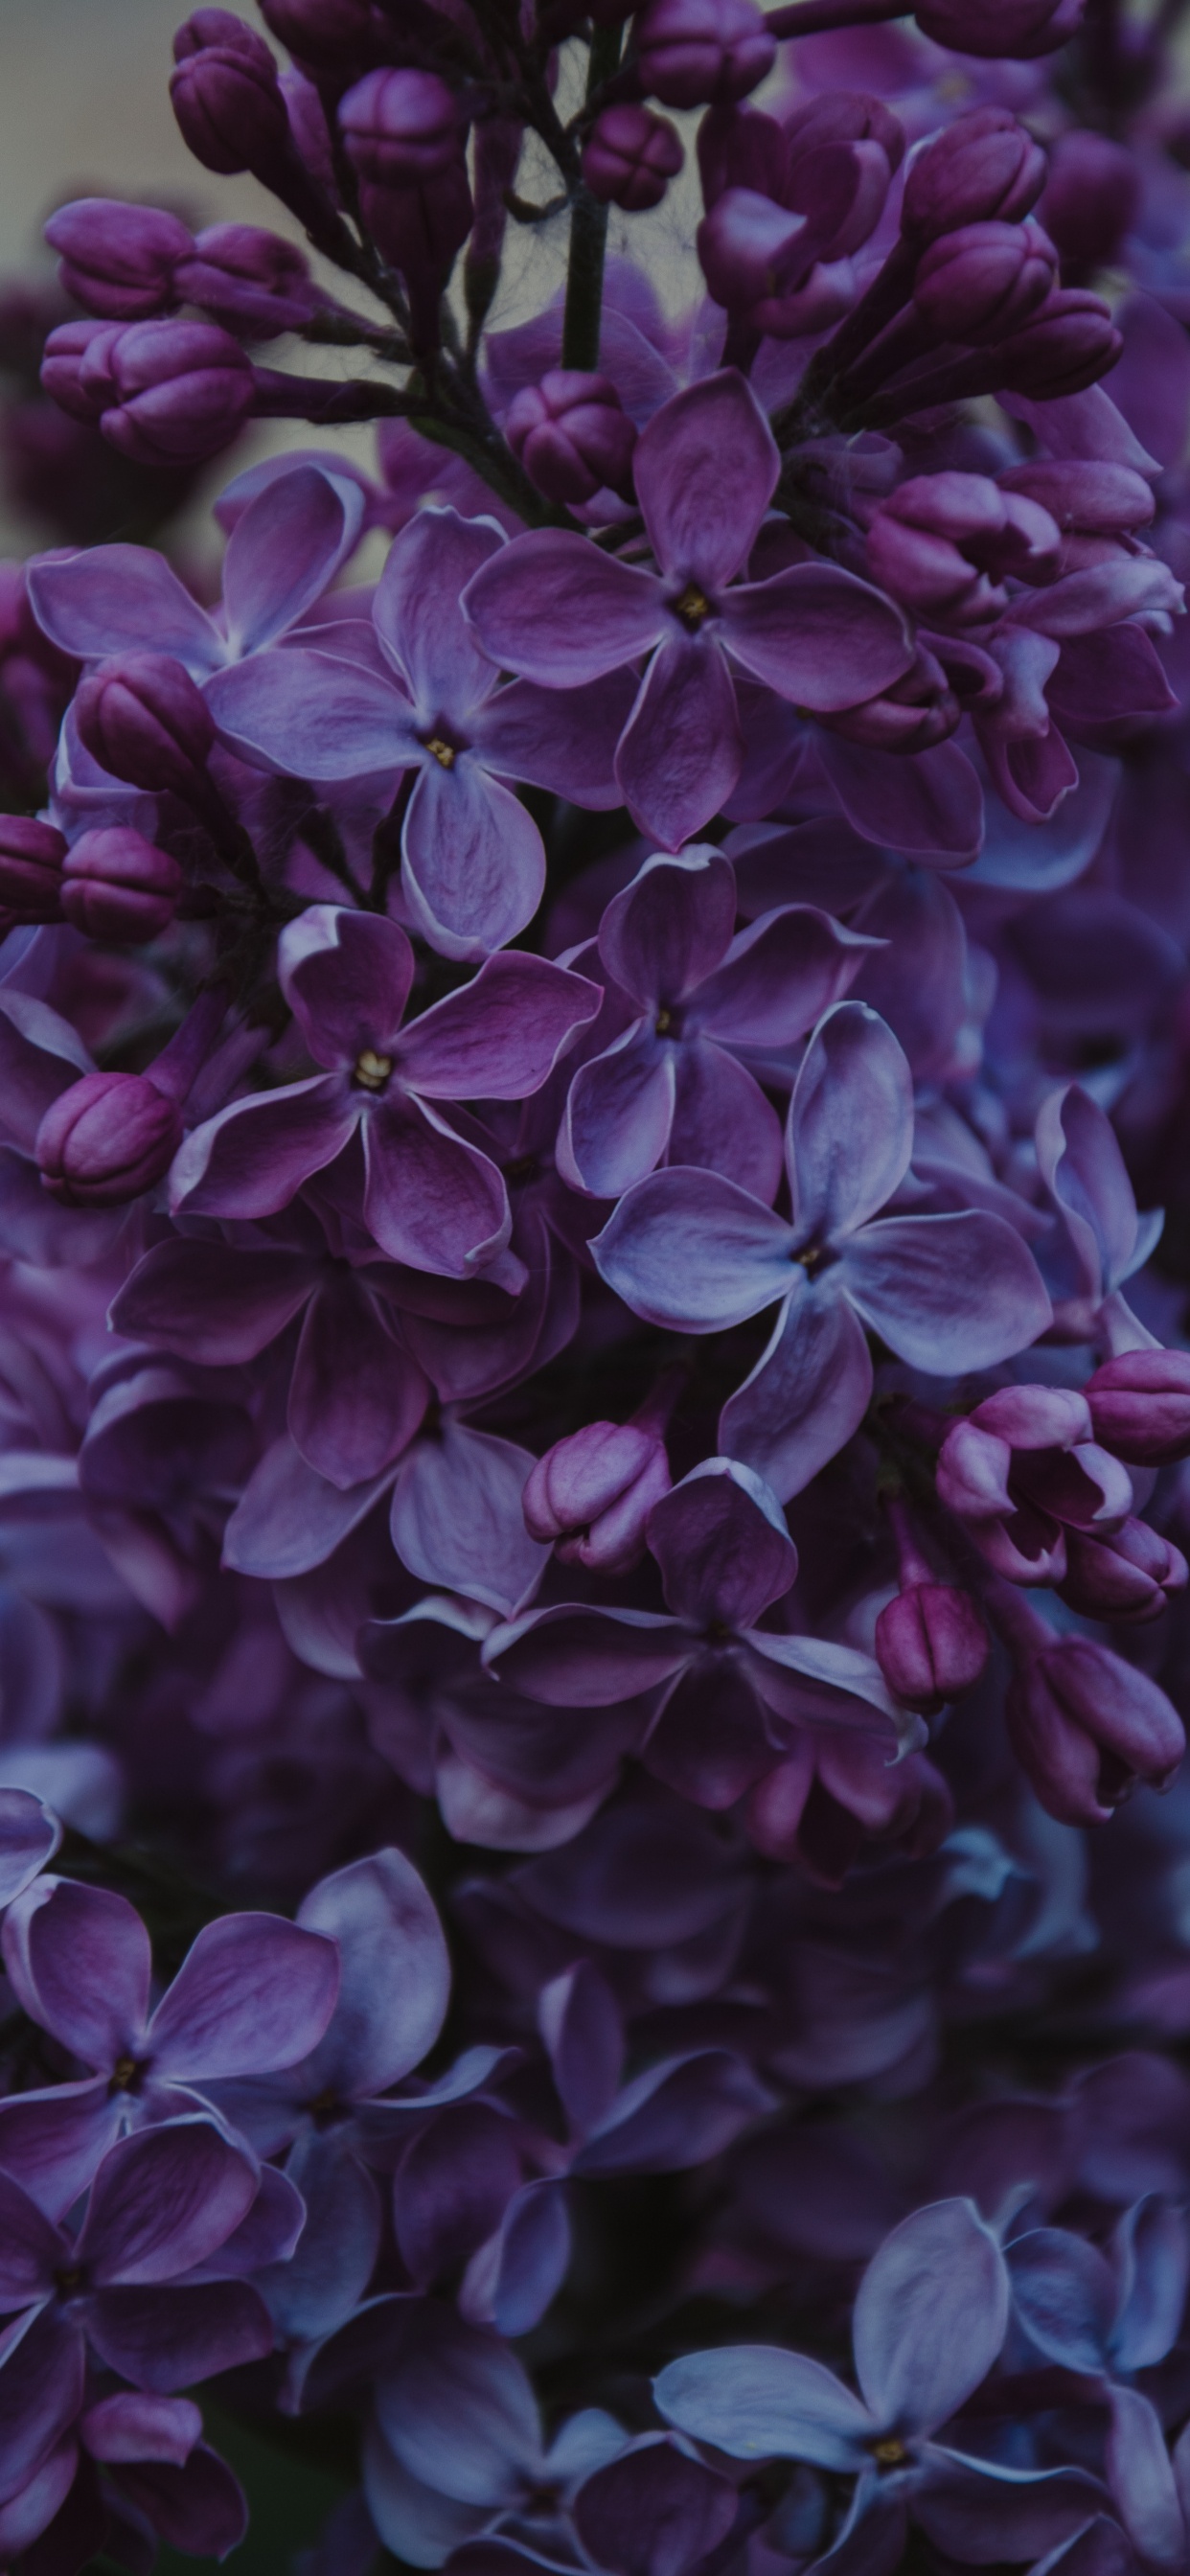 Fleurs Violettes Dans L'objectif à Basculement. Wallpaper in 1242x2688 Resolution